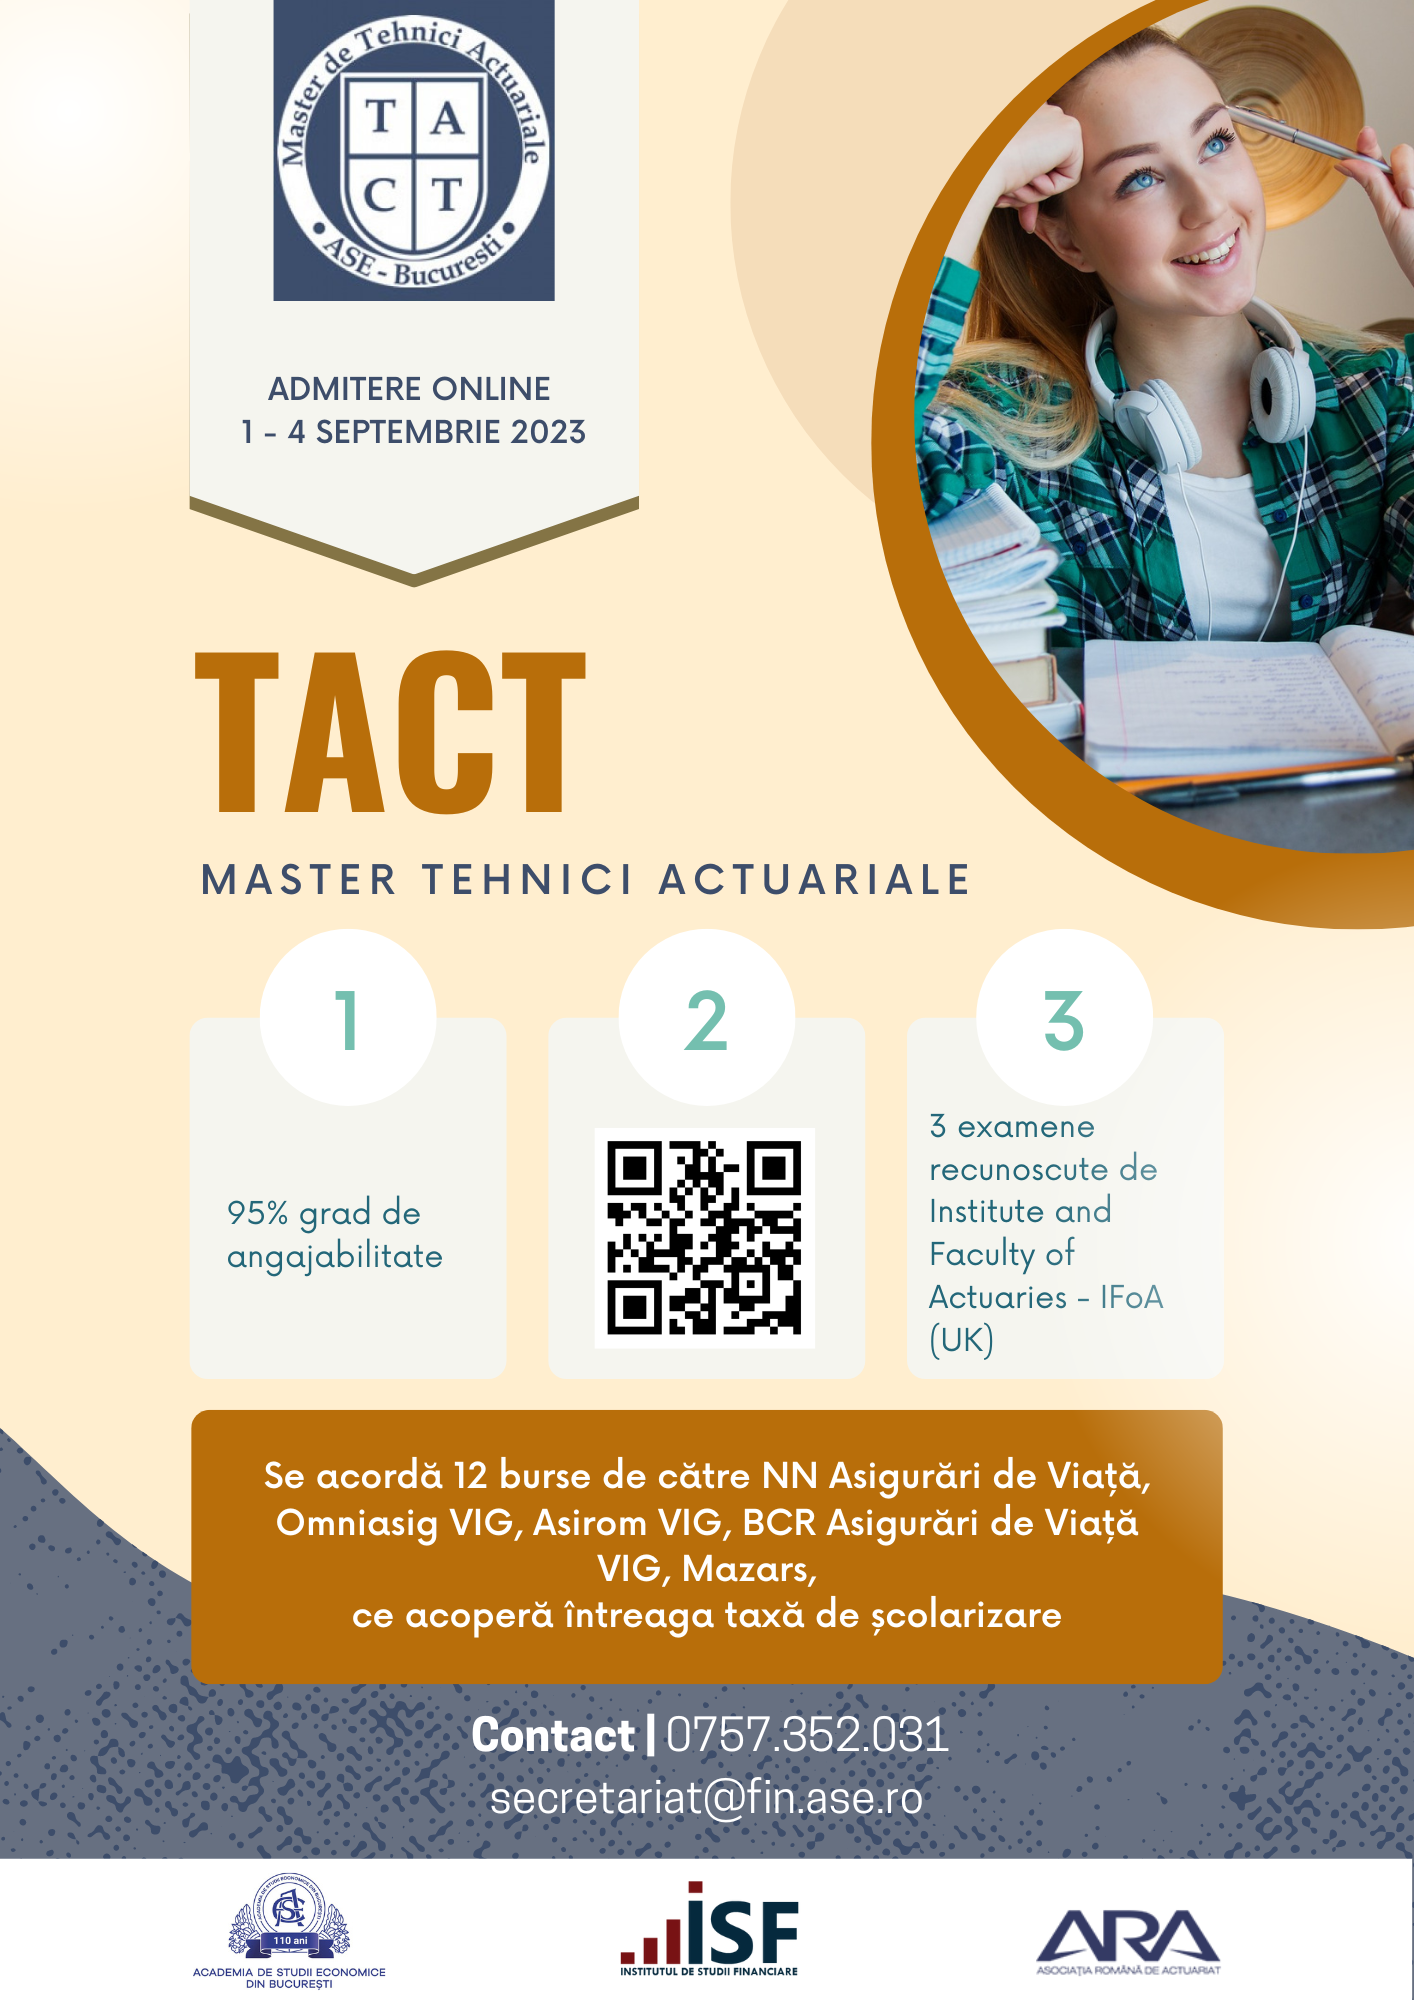 Admitere Master Tehnici Actuariale – TACT (sesiunea de toamnă: 1-4 septembrie 2023)